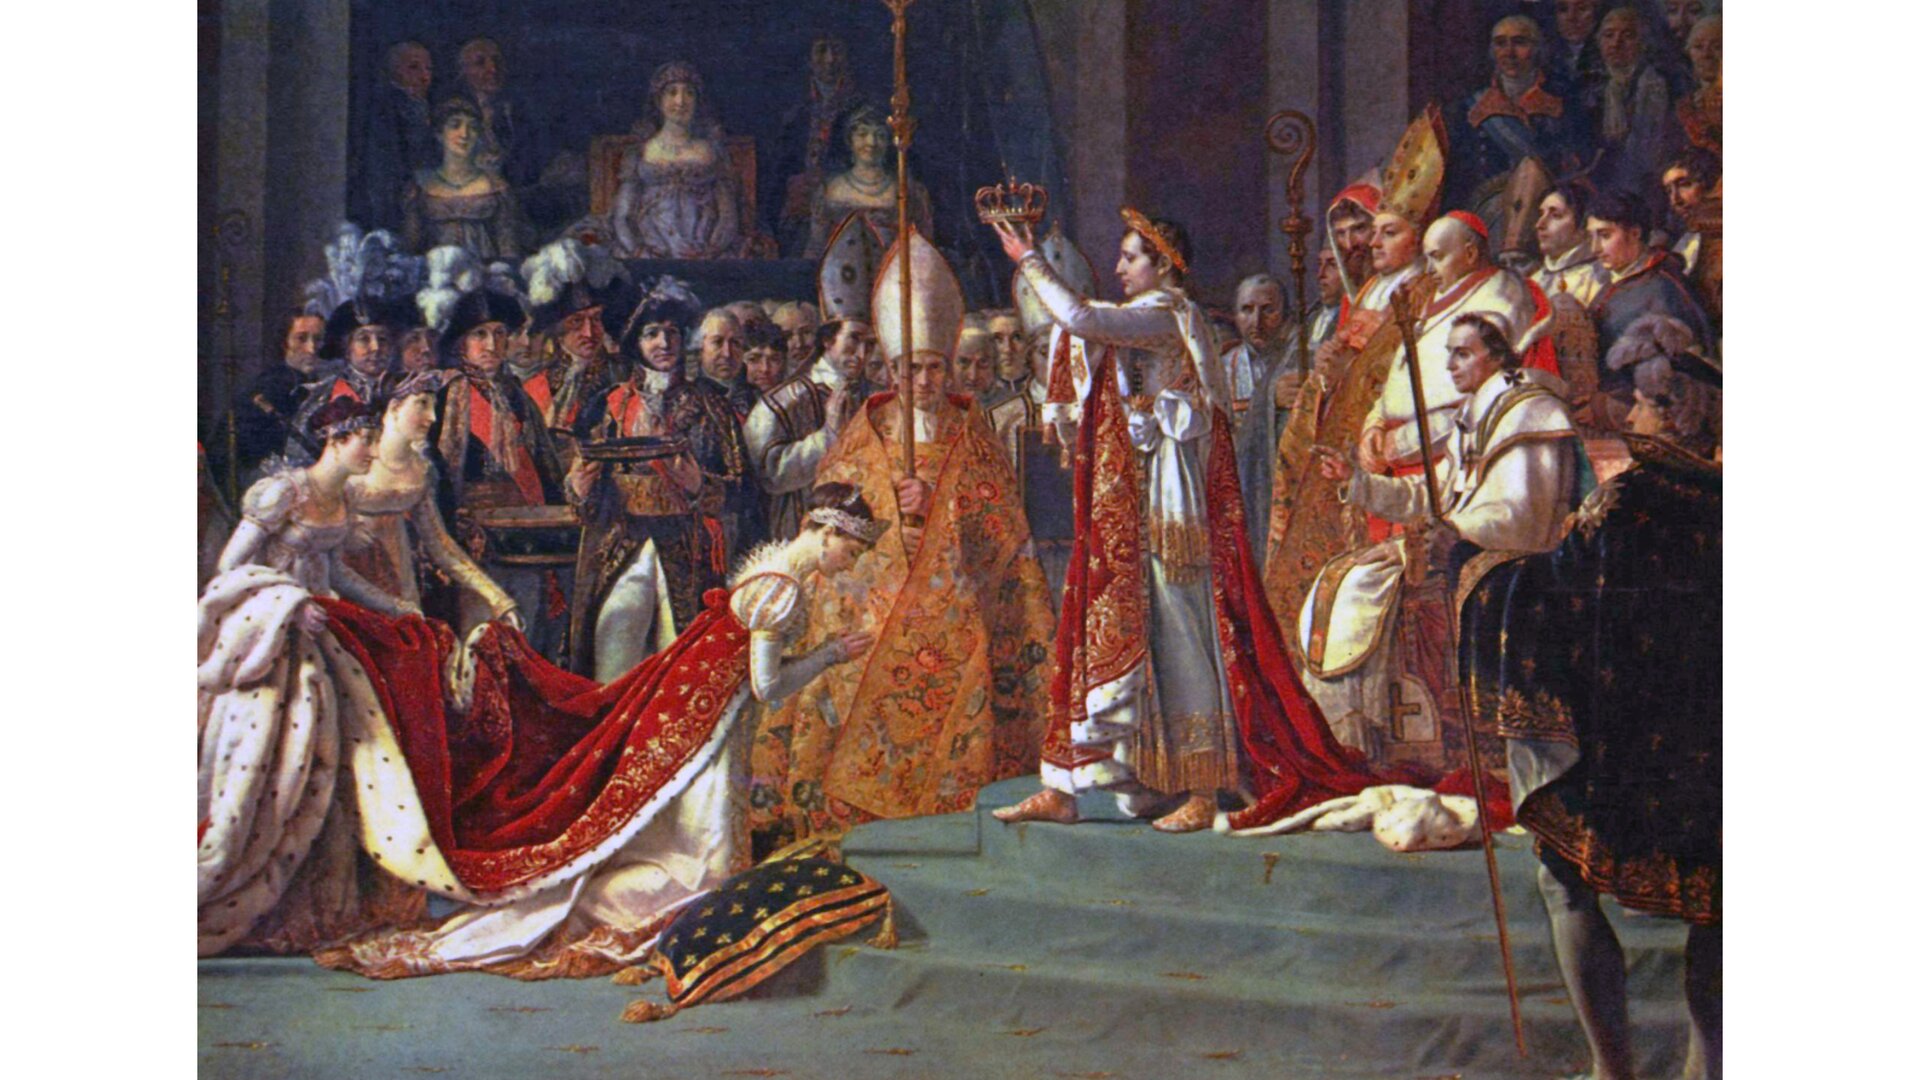 Obraz „Koronacja Napoleona”: Napoleon trzyma w górze koronę dla Jadwigi. Kobieta klęczy, ma pochyloną głowę i złożone ręce.